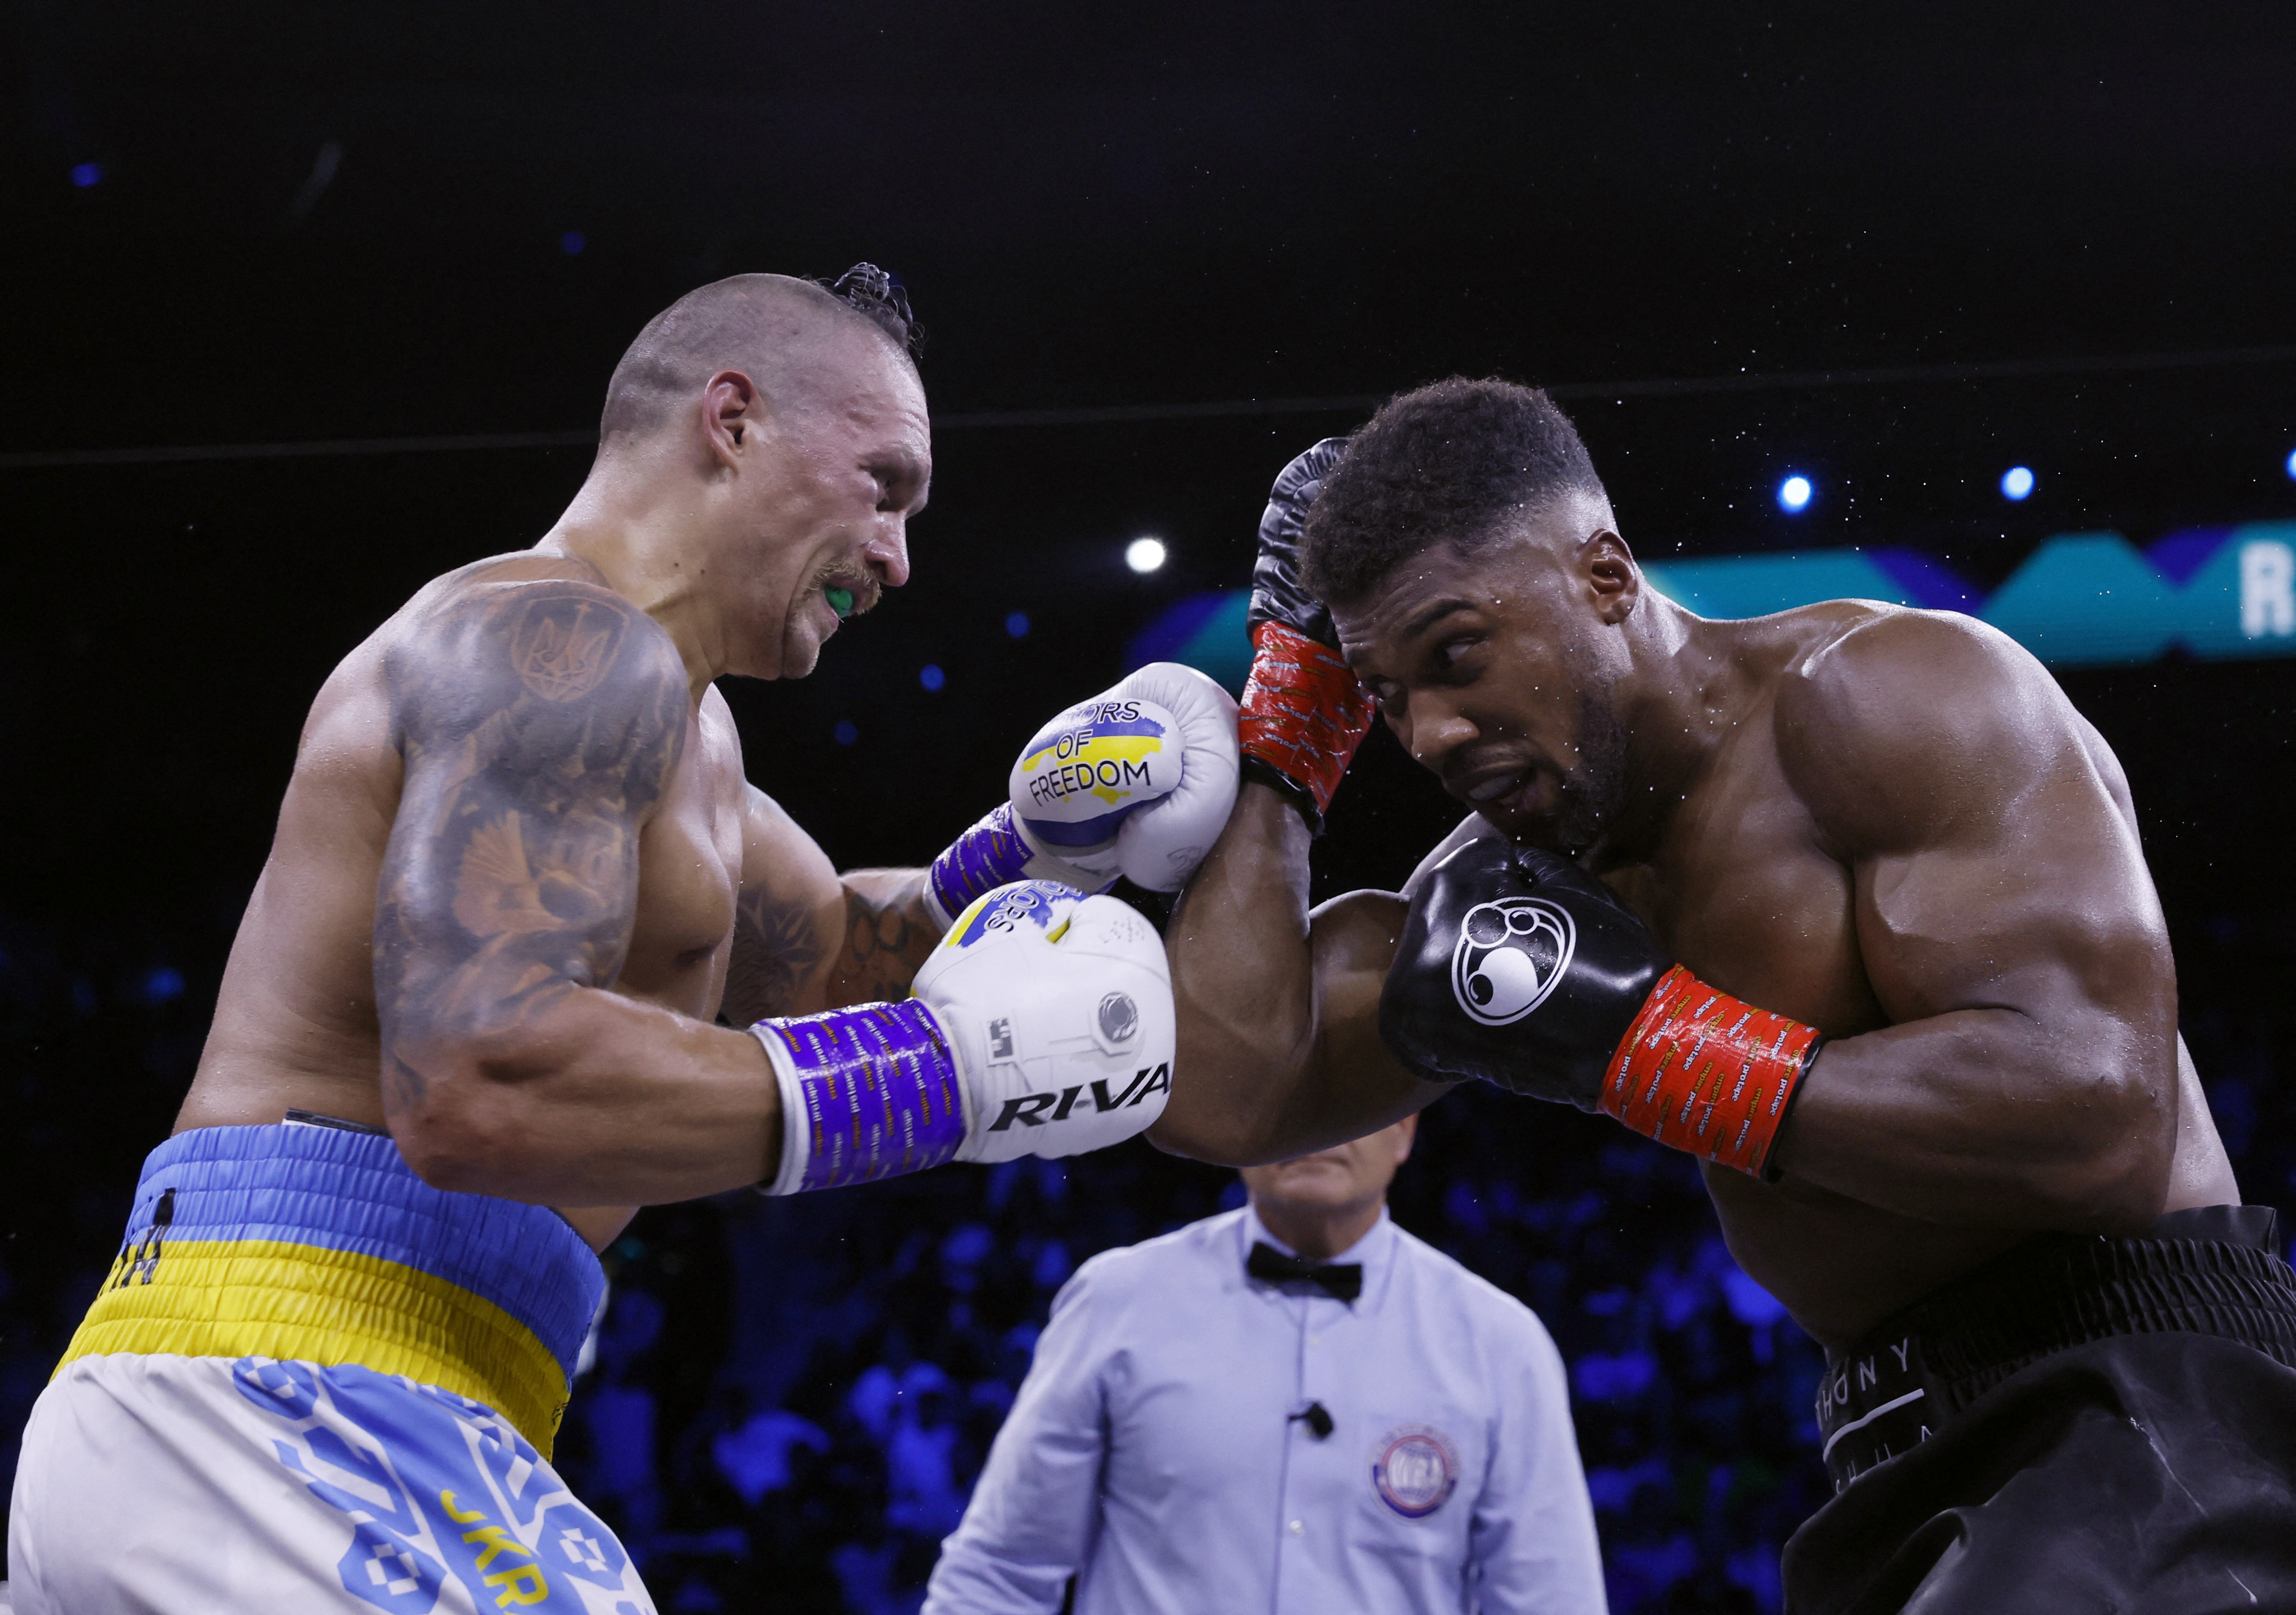 Oleksander Usyk venció a Anthony Joshua en su más reciente pelea y conservó sus tres cinturones de peso completo (Foto: Andrew Couldridge/REUTERS)